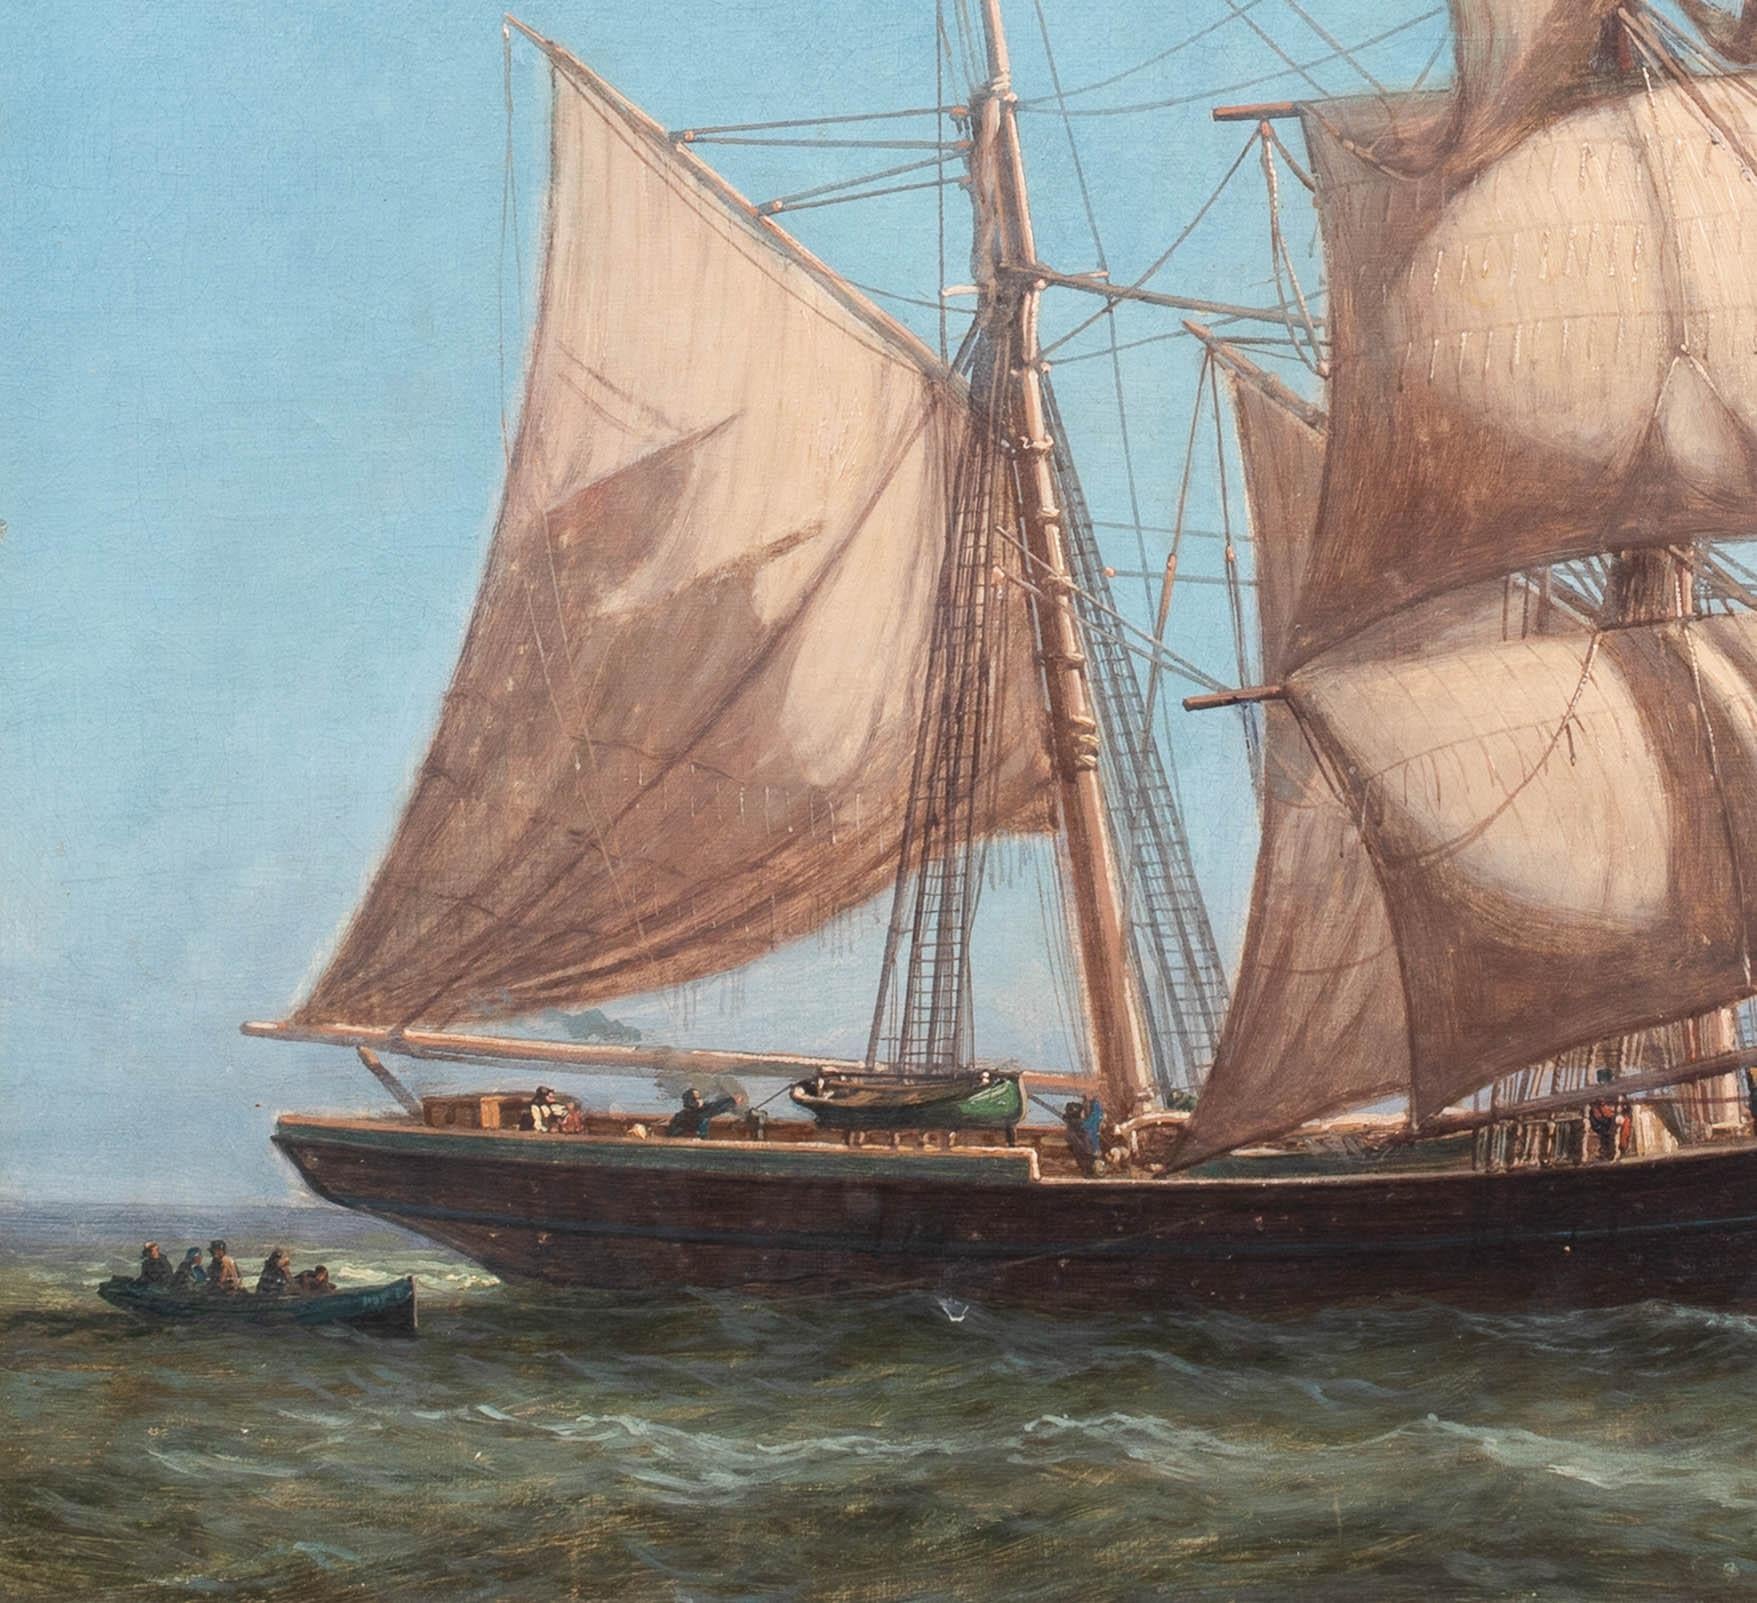 Britisches Schooner-Schiff, das Jersey/Guernsey- Hafen porträtiert, 19. Jahrhundert

Britische Schule

19. Jahrhundert Marine-Ölstudie eines britischen Schoners bei der Einfahrt in den Hafen von Jersey/Guernsey, Öl auf Karton. Hervorragende Qualität